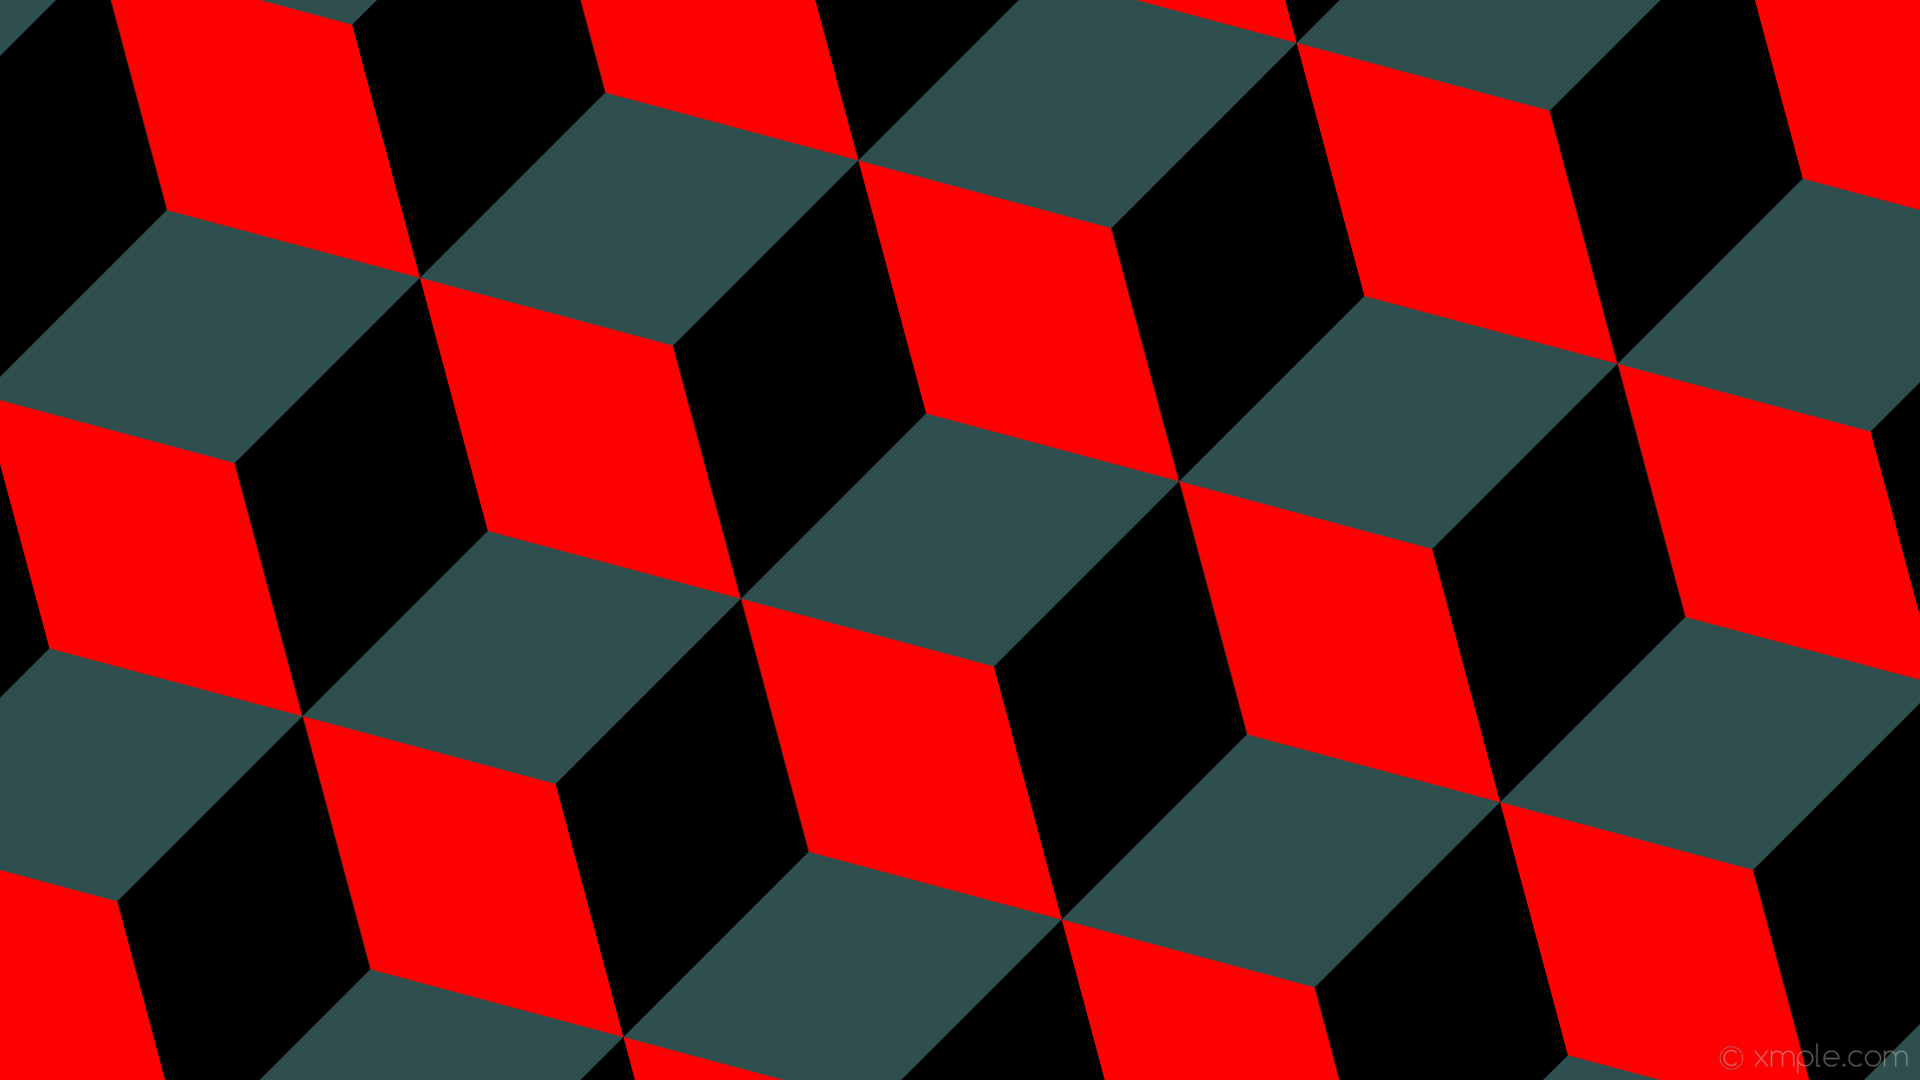 1920x1080 wallpaper red 3d cubes grey black dark slate gray #2f4f4f #ff0000 #000000 15